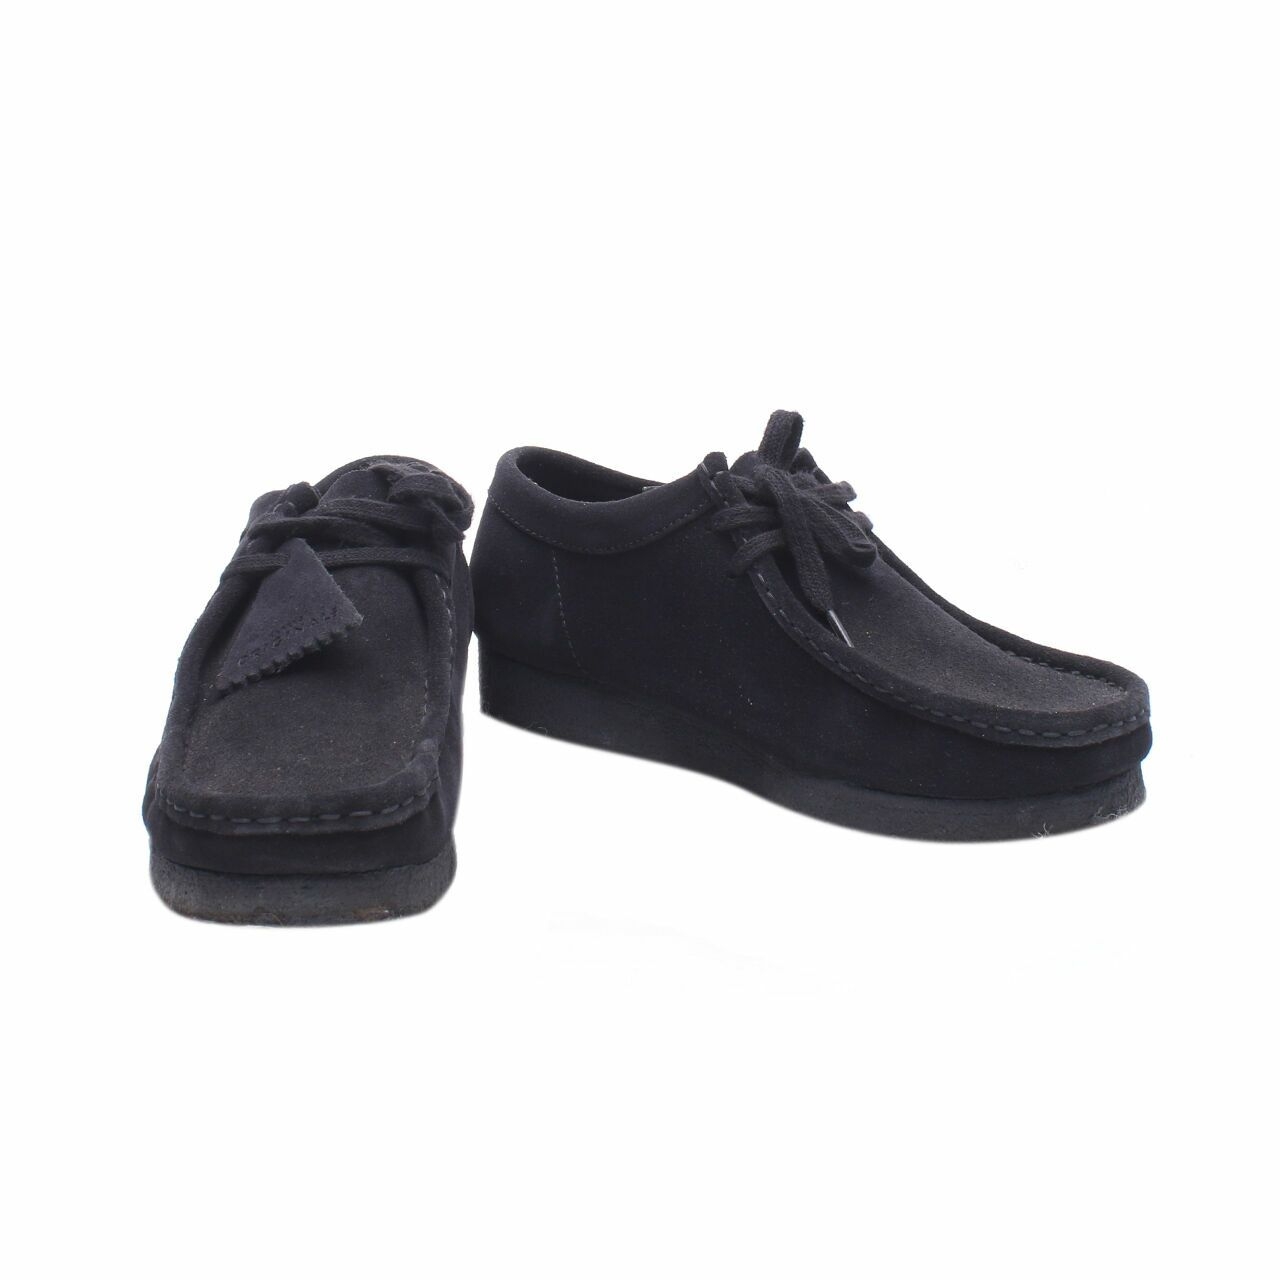 Clarks Wallabee Black Sneakers